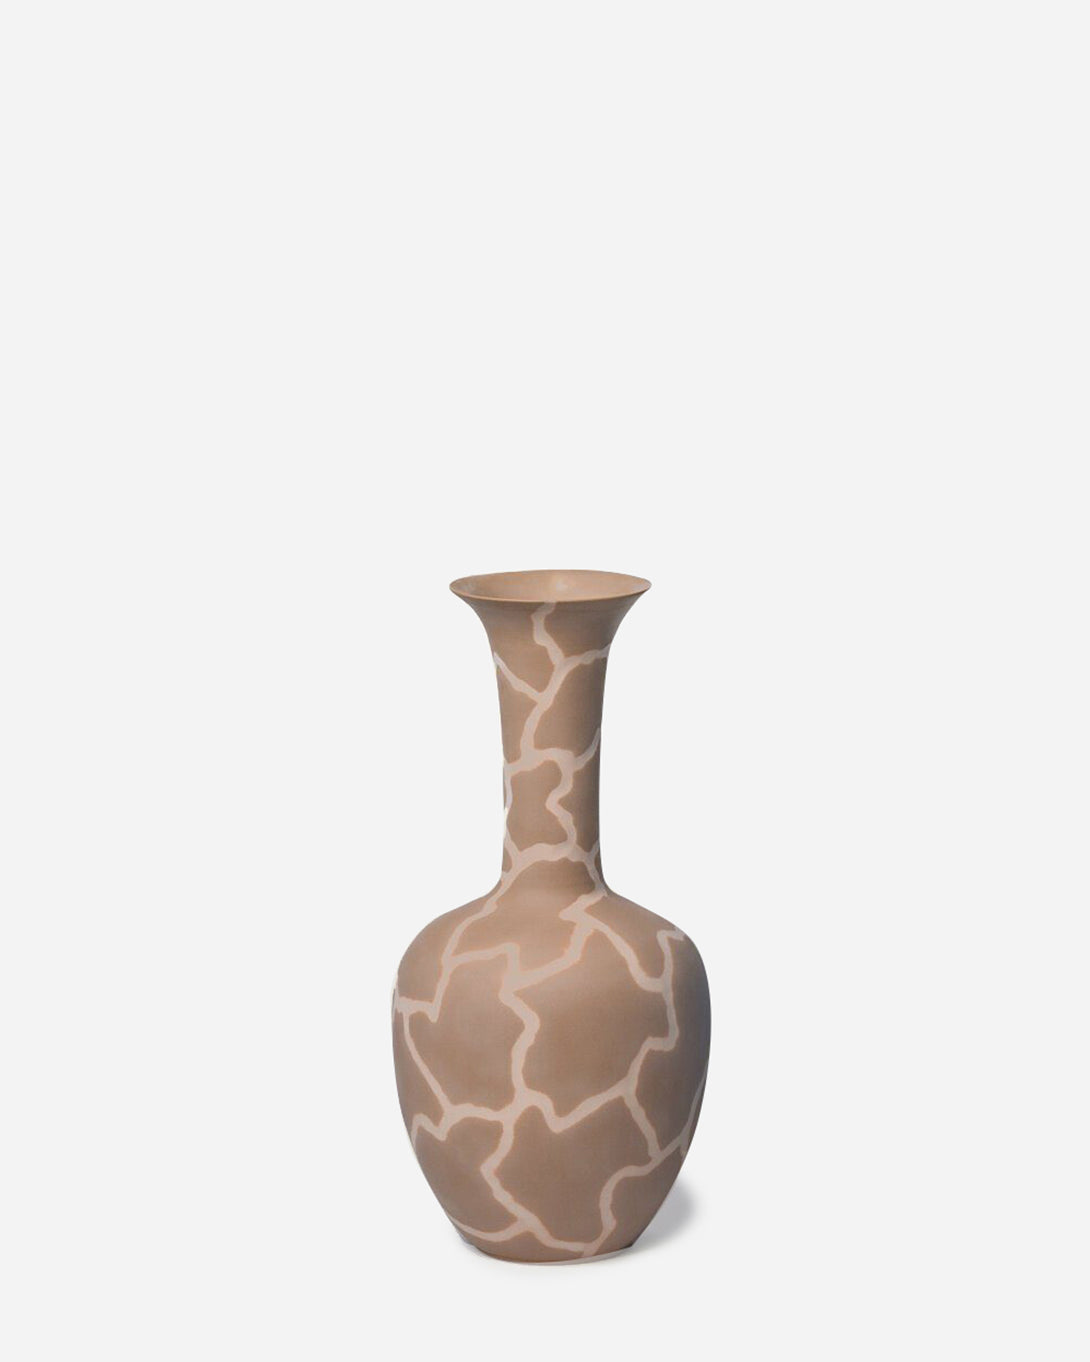 LATTE Morning Glory Vase, Middle Kingdom